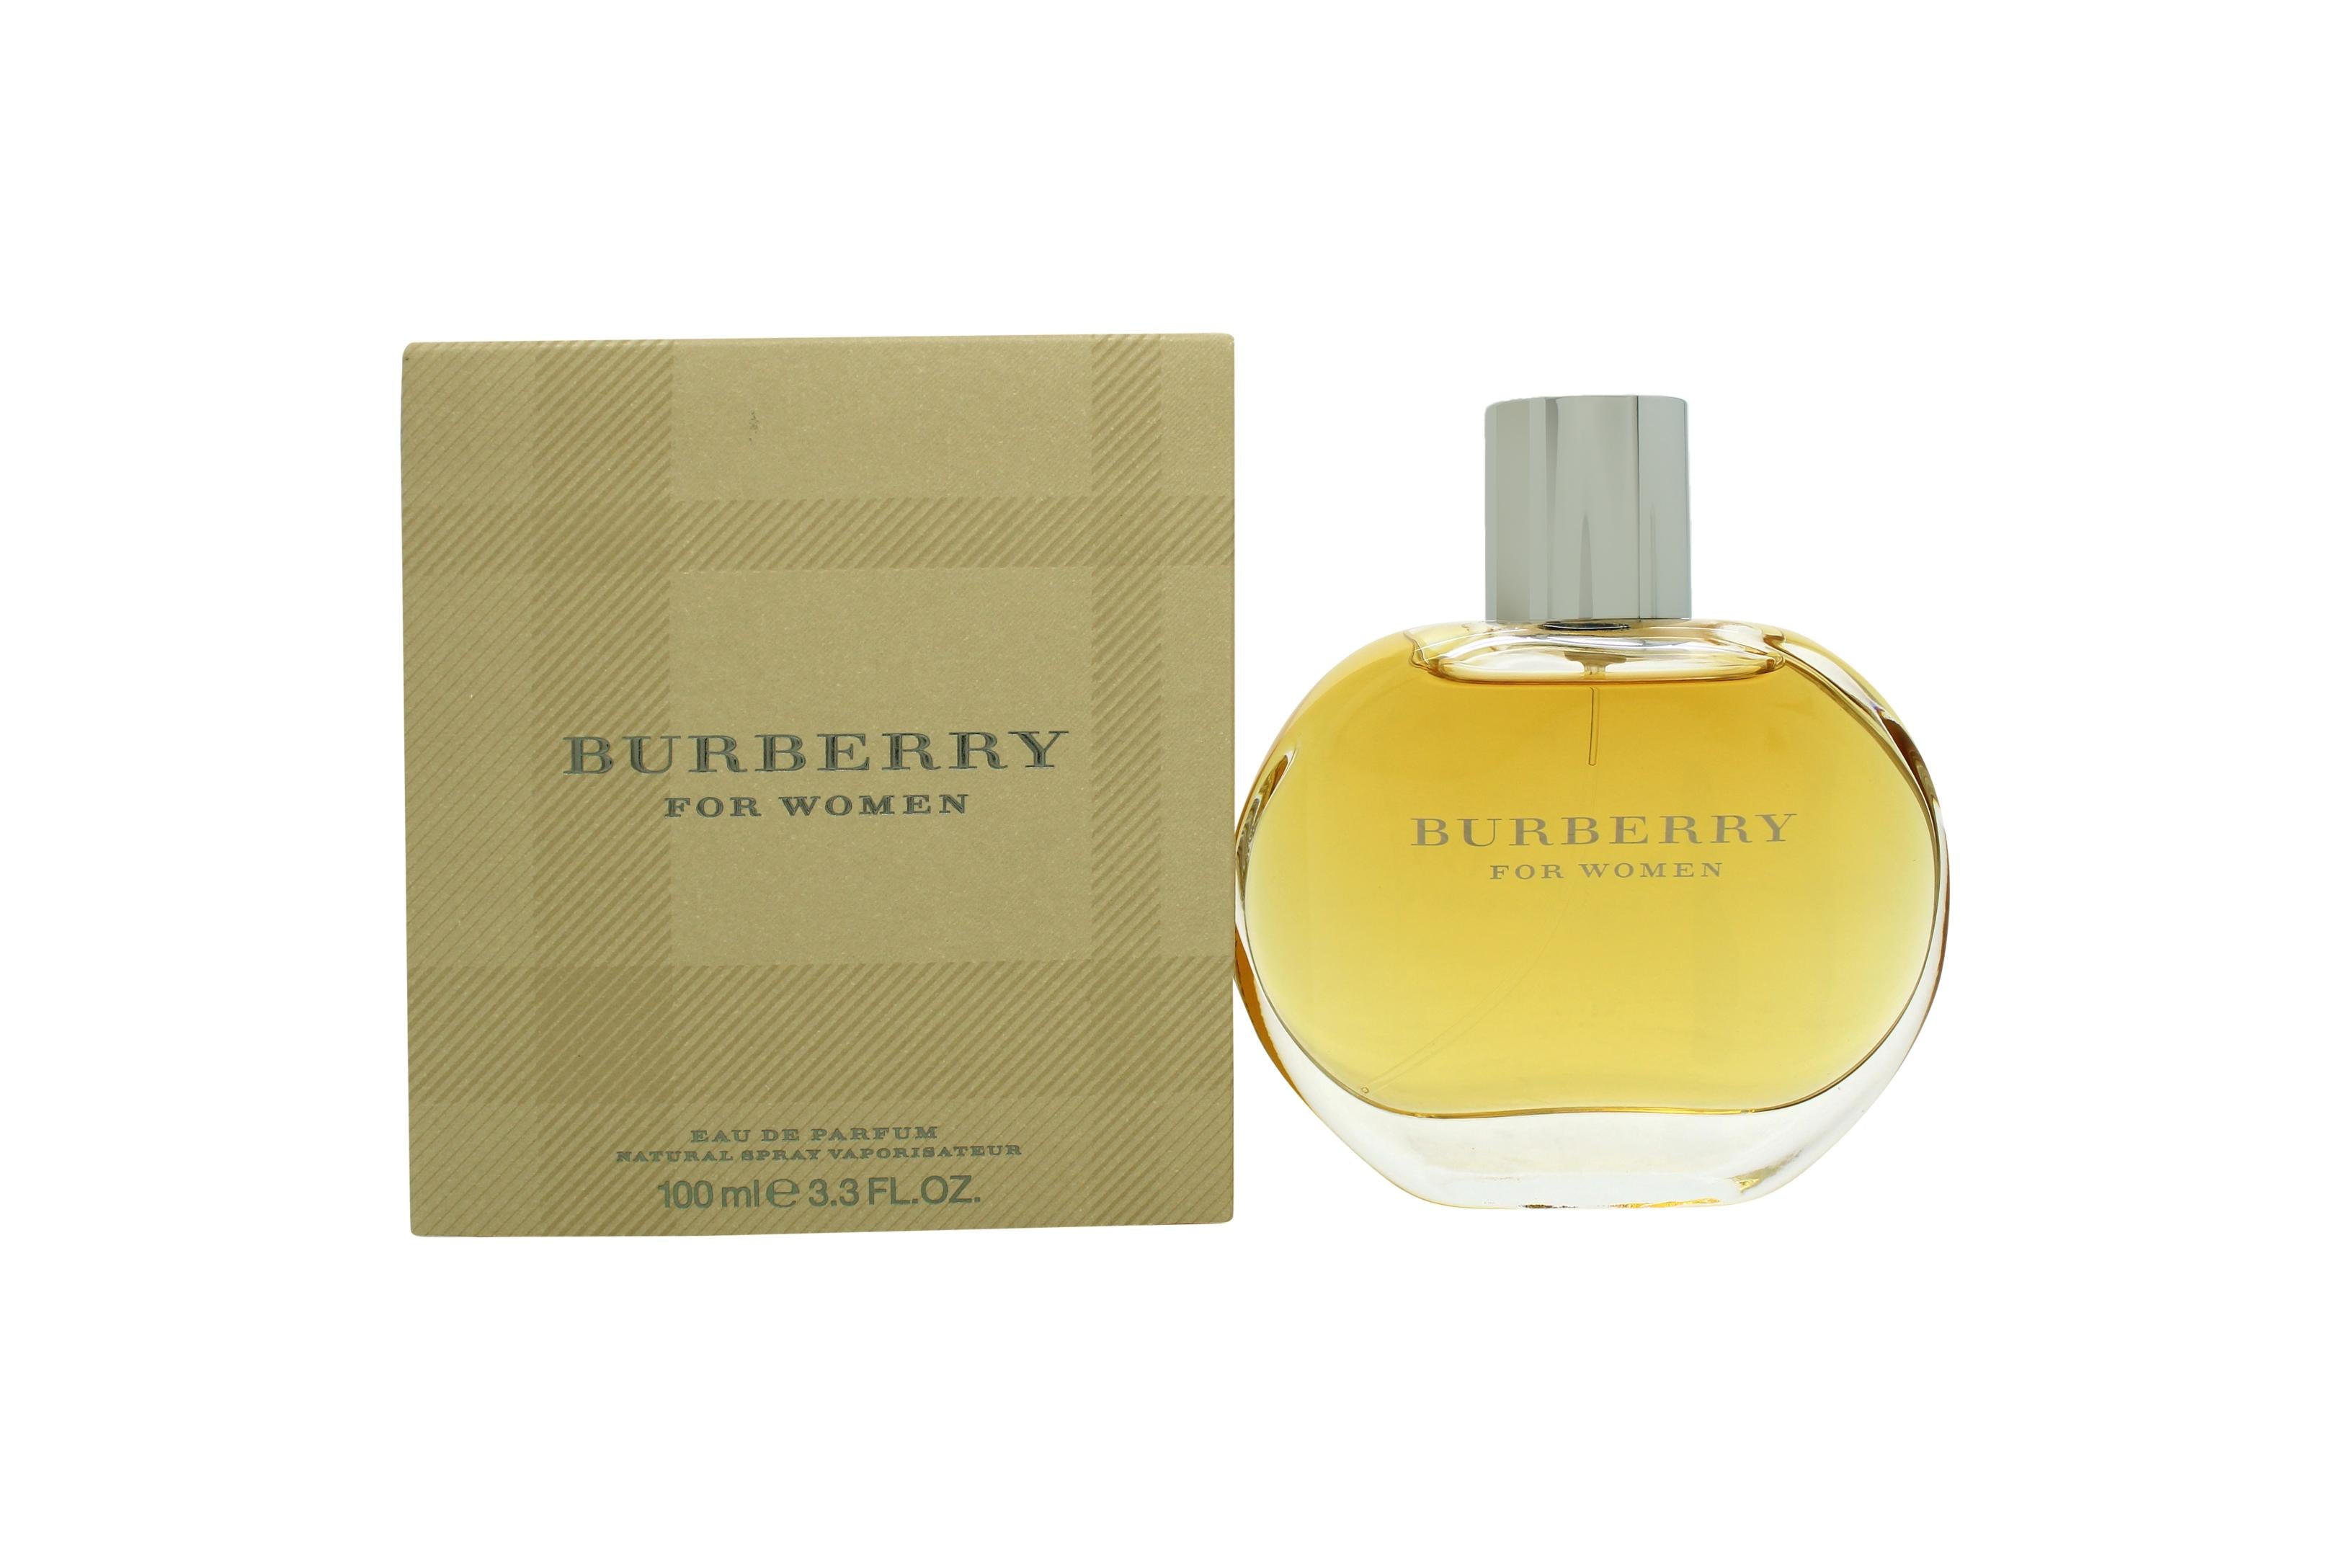 View Burberry Eau de Parfum 100ml Spray information